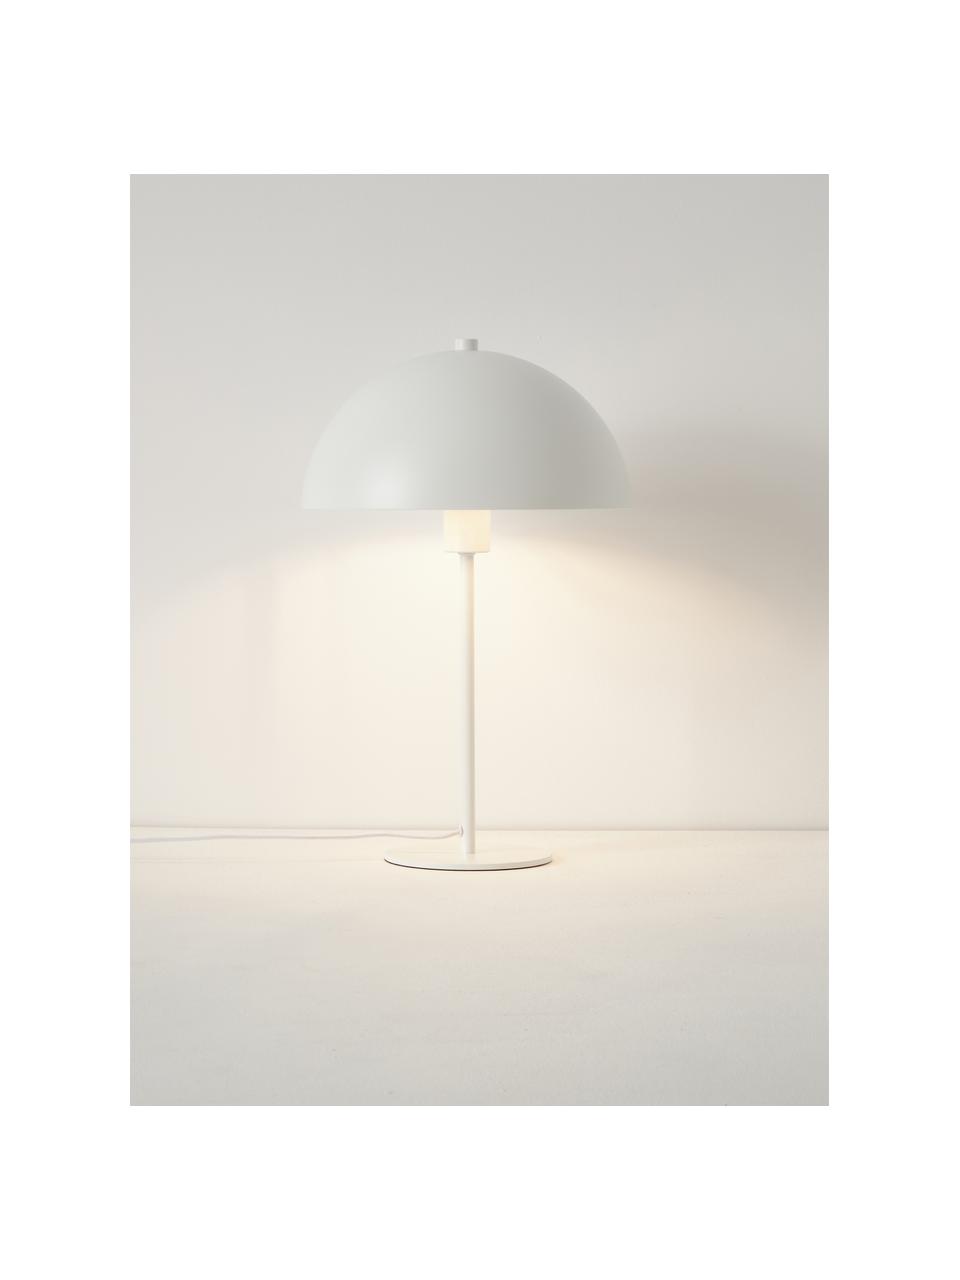 Lampa stołowa Matilda, Biały, Ø 29 x W 45 cm